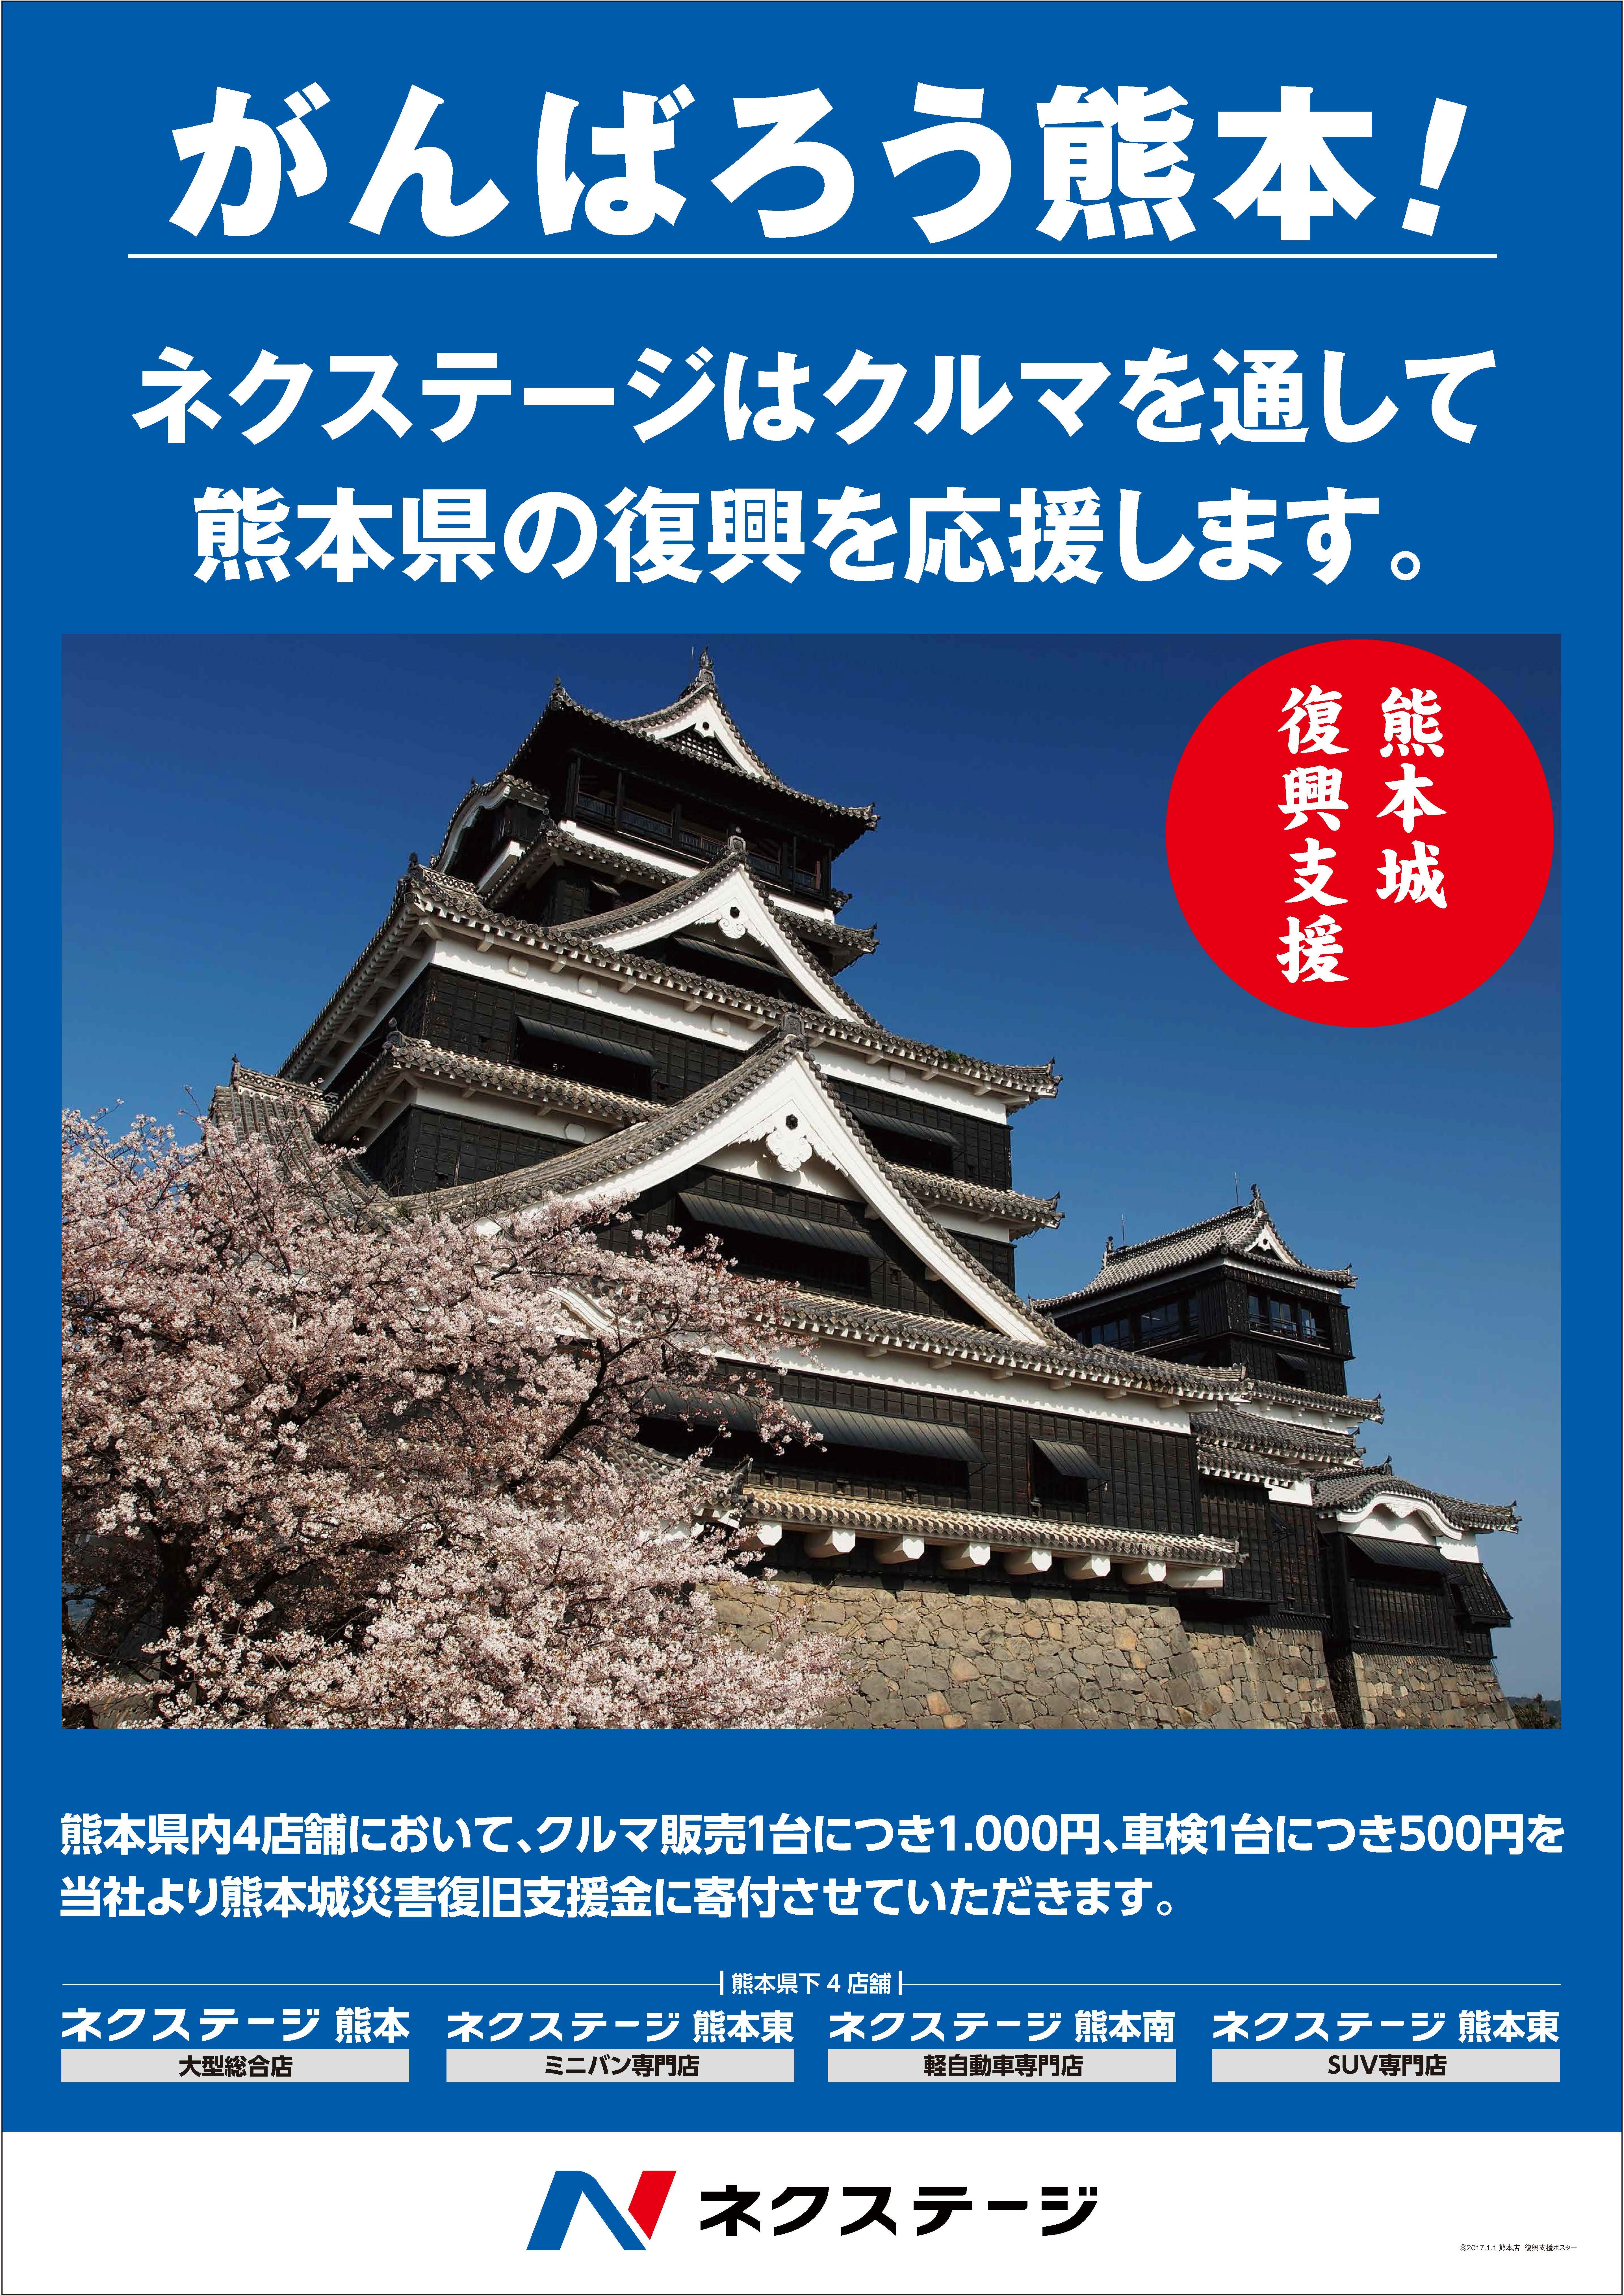 熊本地震からもうすぐ1年 ネクステージも熊本城災害復旧支援金を通じて熊本の復興を応援 第1回寄付報告 株式会社ネクステージのプレスリリース